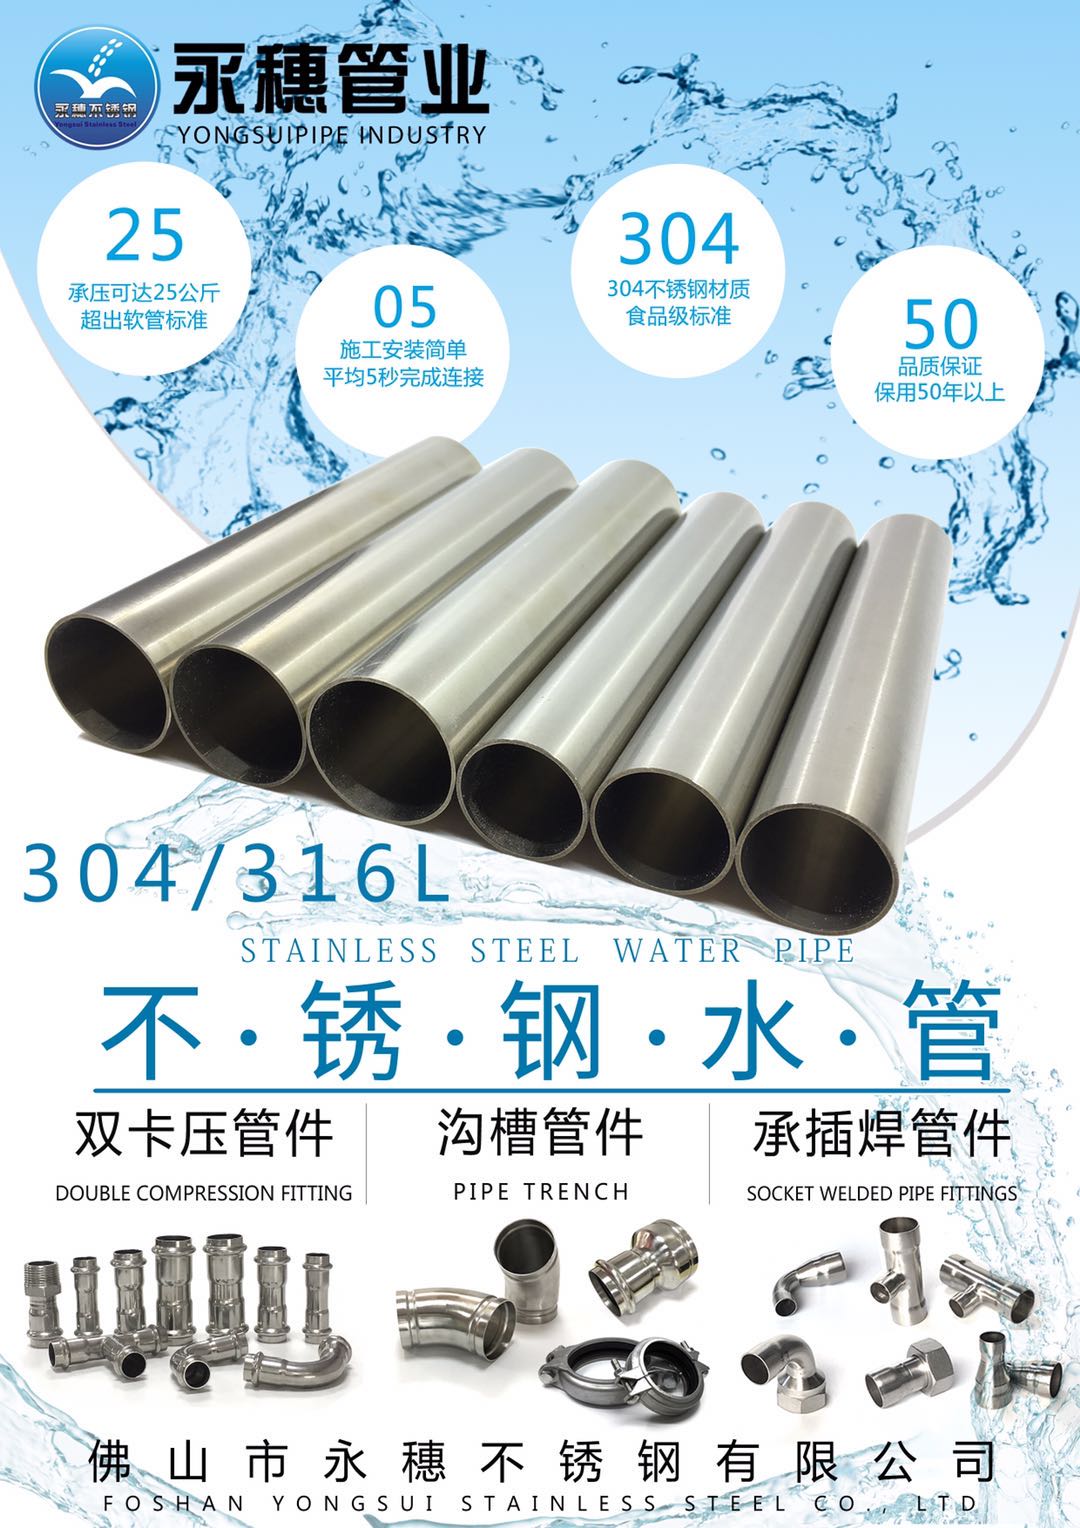 不锈钢水管宣传广告大图.jpg